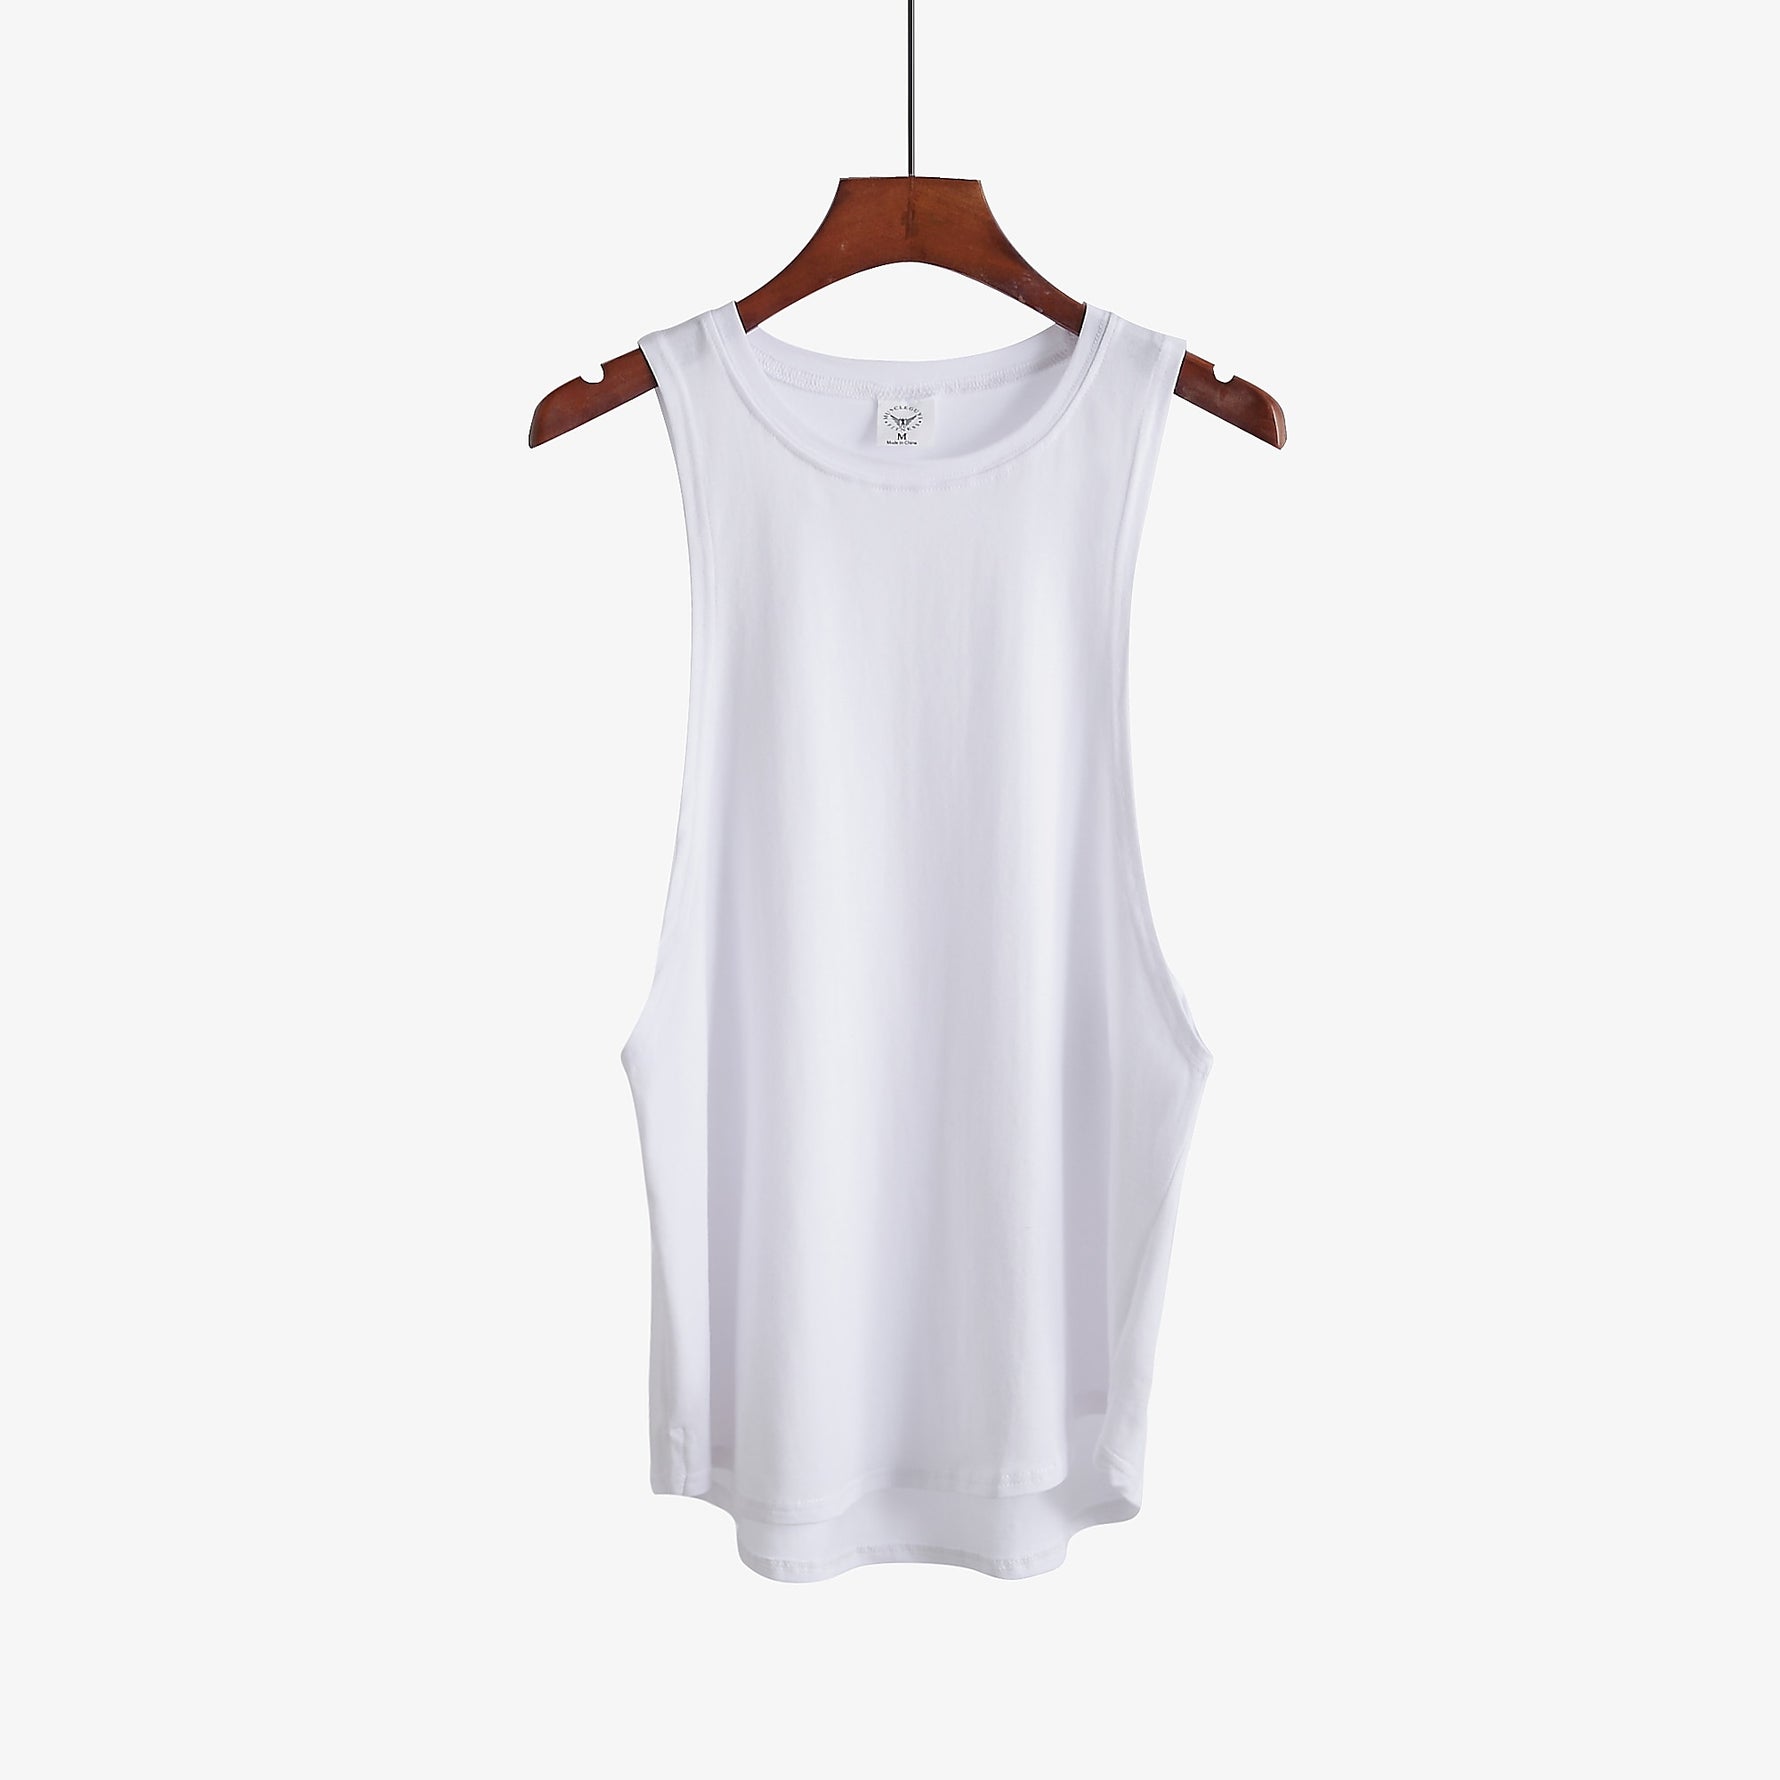 Fitness clothing blank sleeveless shirt KilyClothing